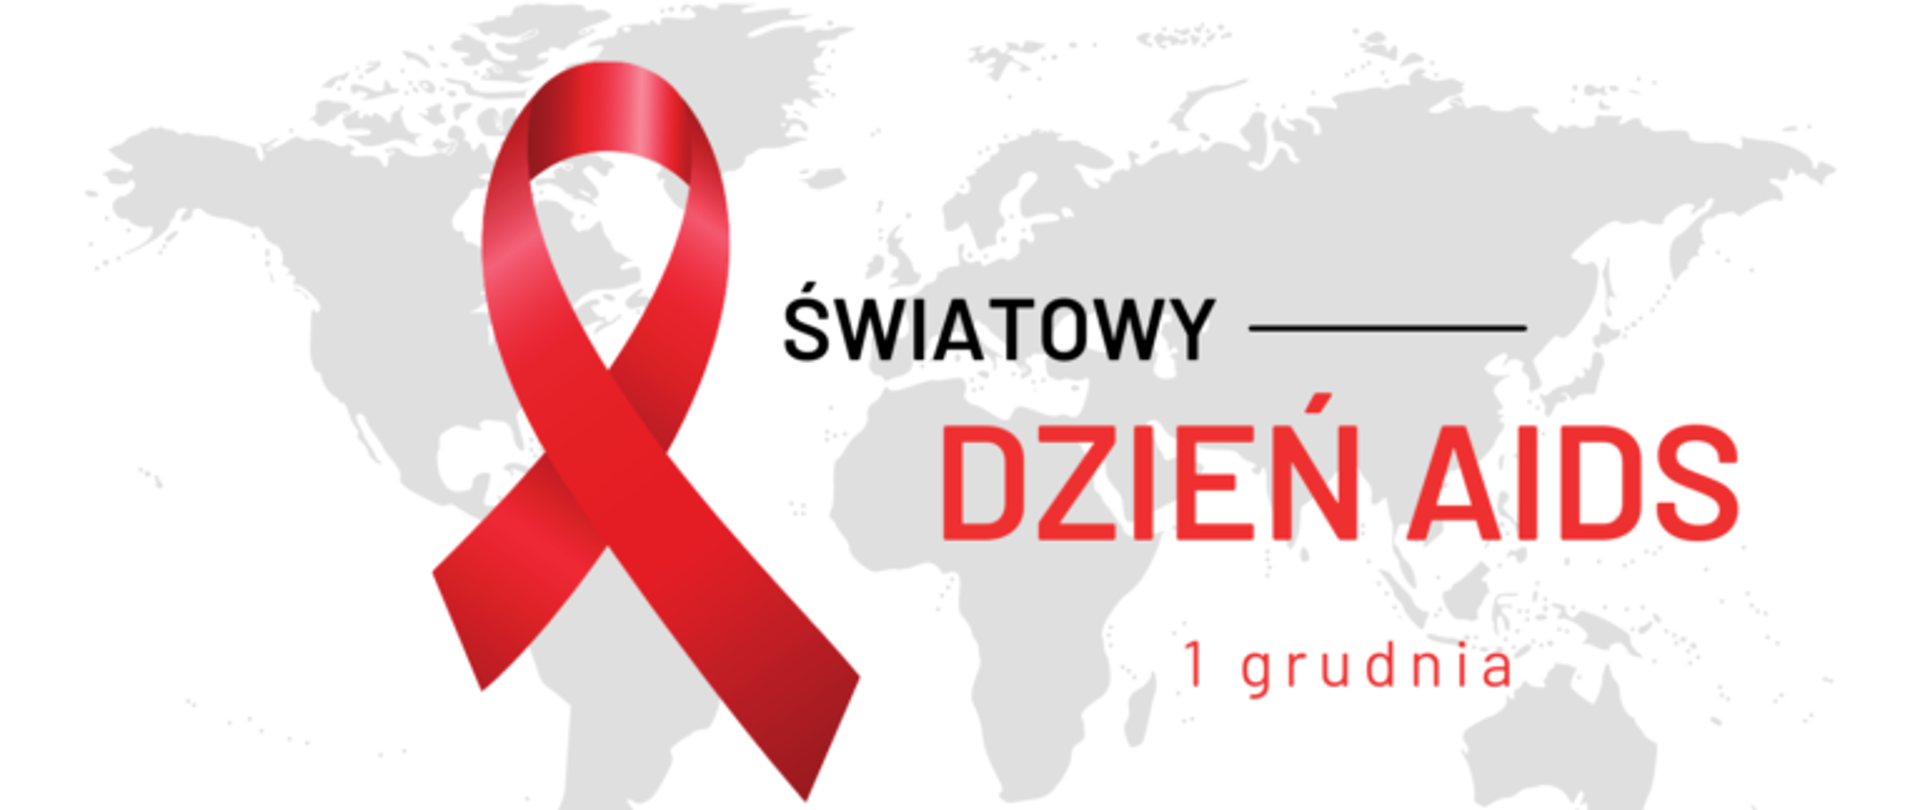 Światowy_dzień_AIDS